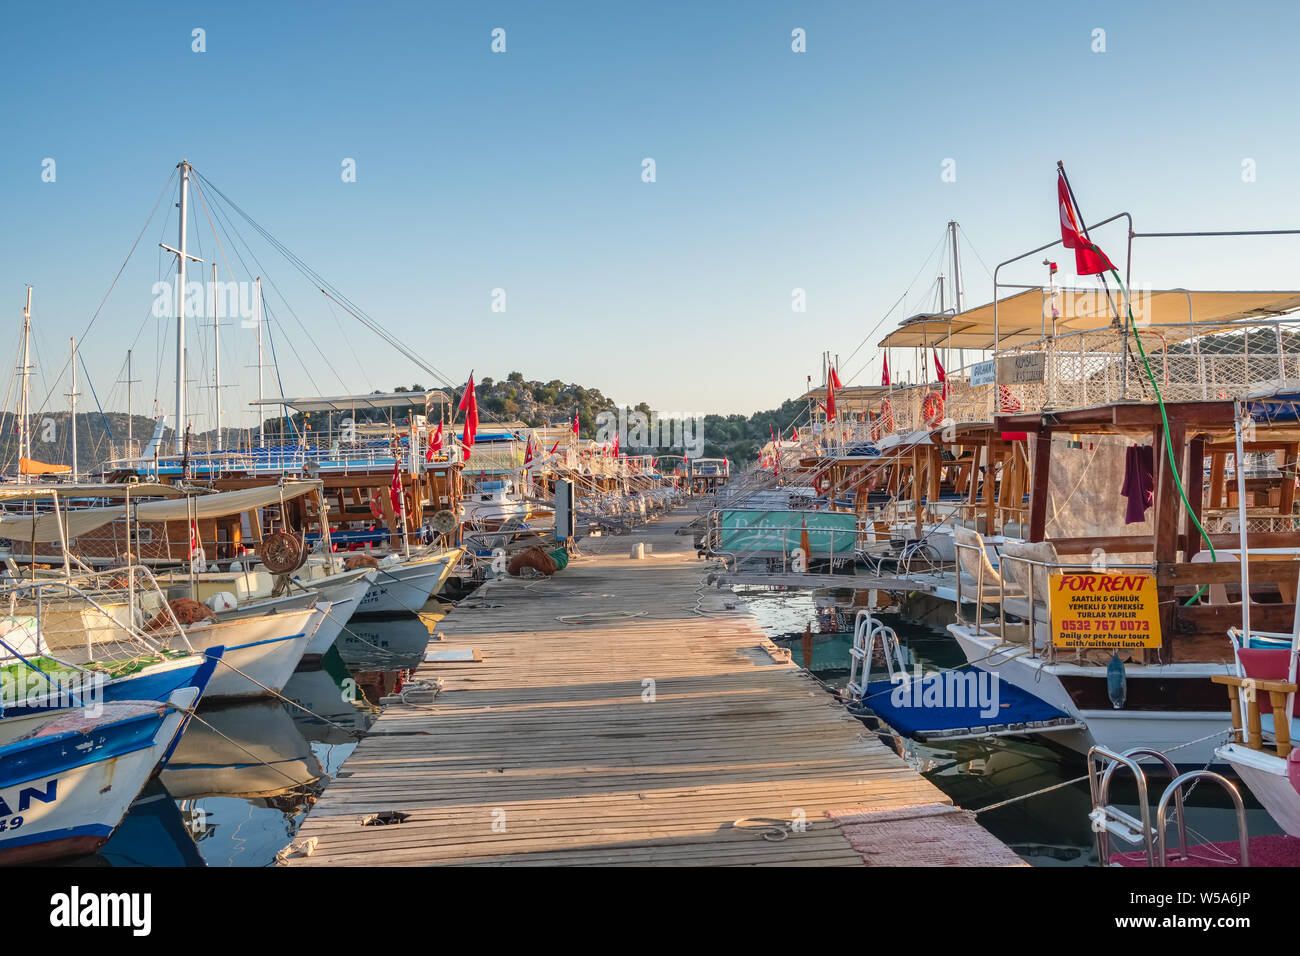 Boote an der Marina in üçagiz Dorf Kekova in der Türkei Stockfoto